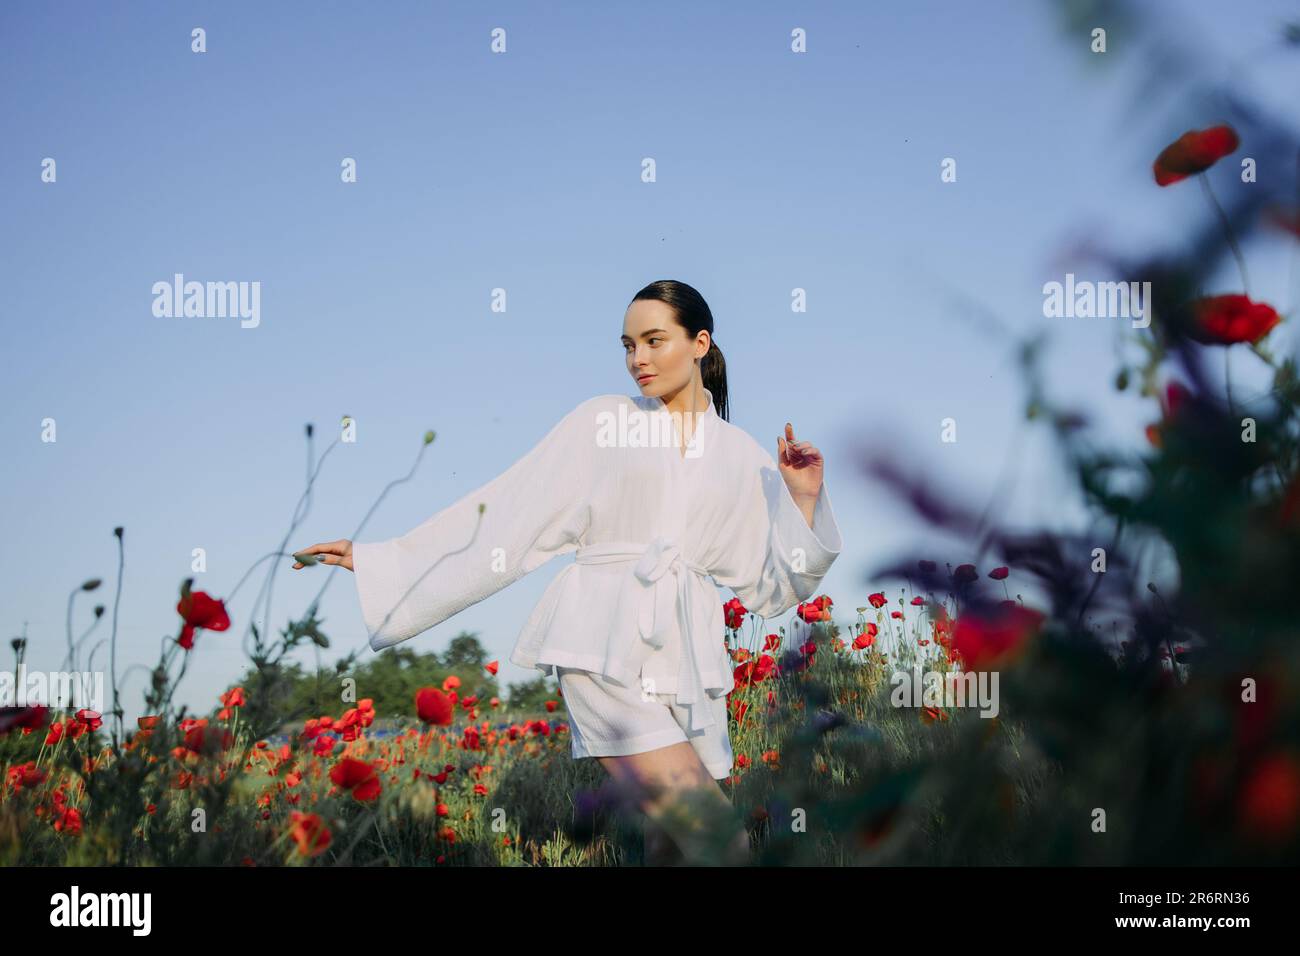 Giovane donna in abiti bianchi che cammina e si gode tra poppies fiorito prato su sfondo cielo. Foto Stock